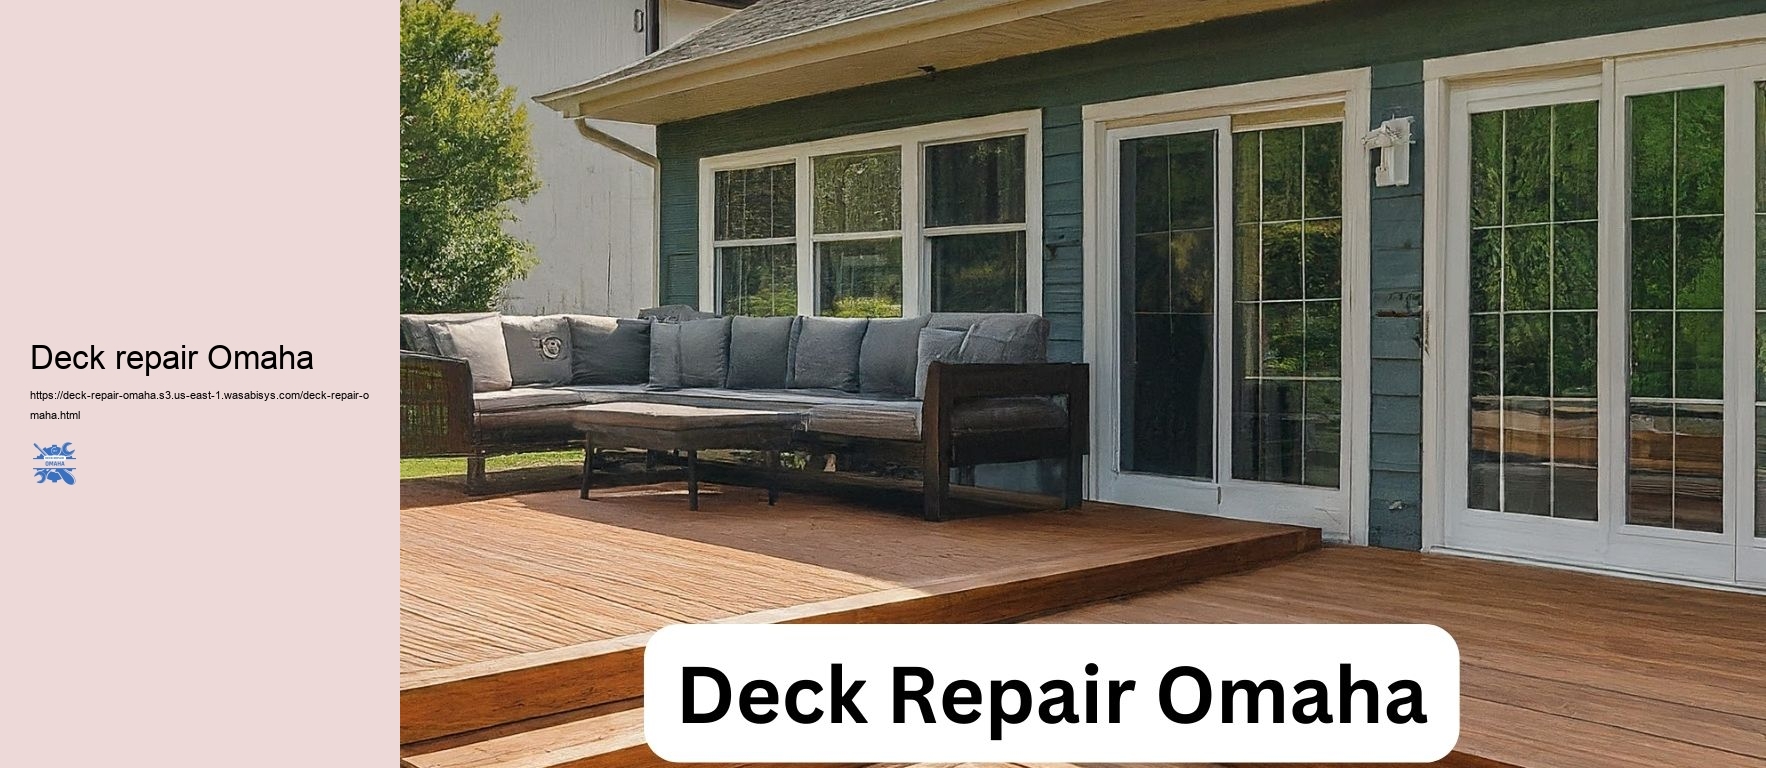 Deck repair Omaha